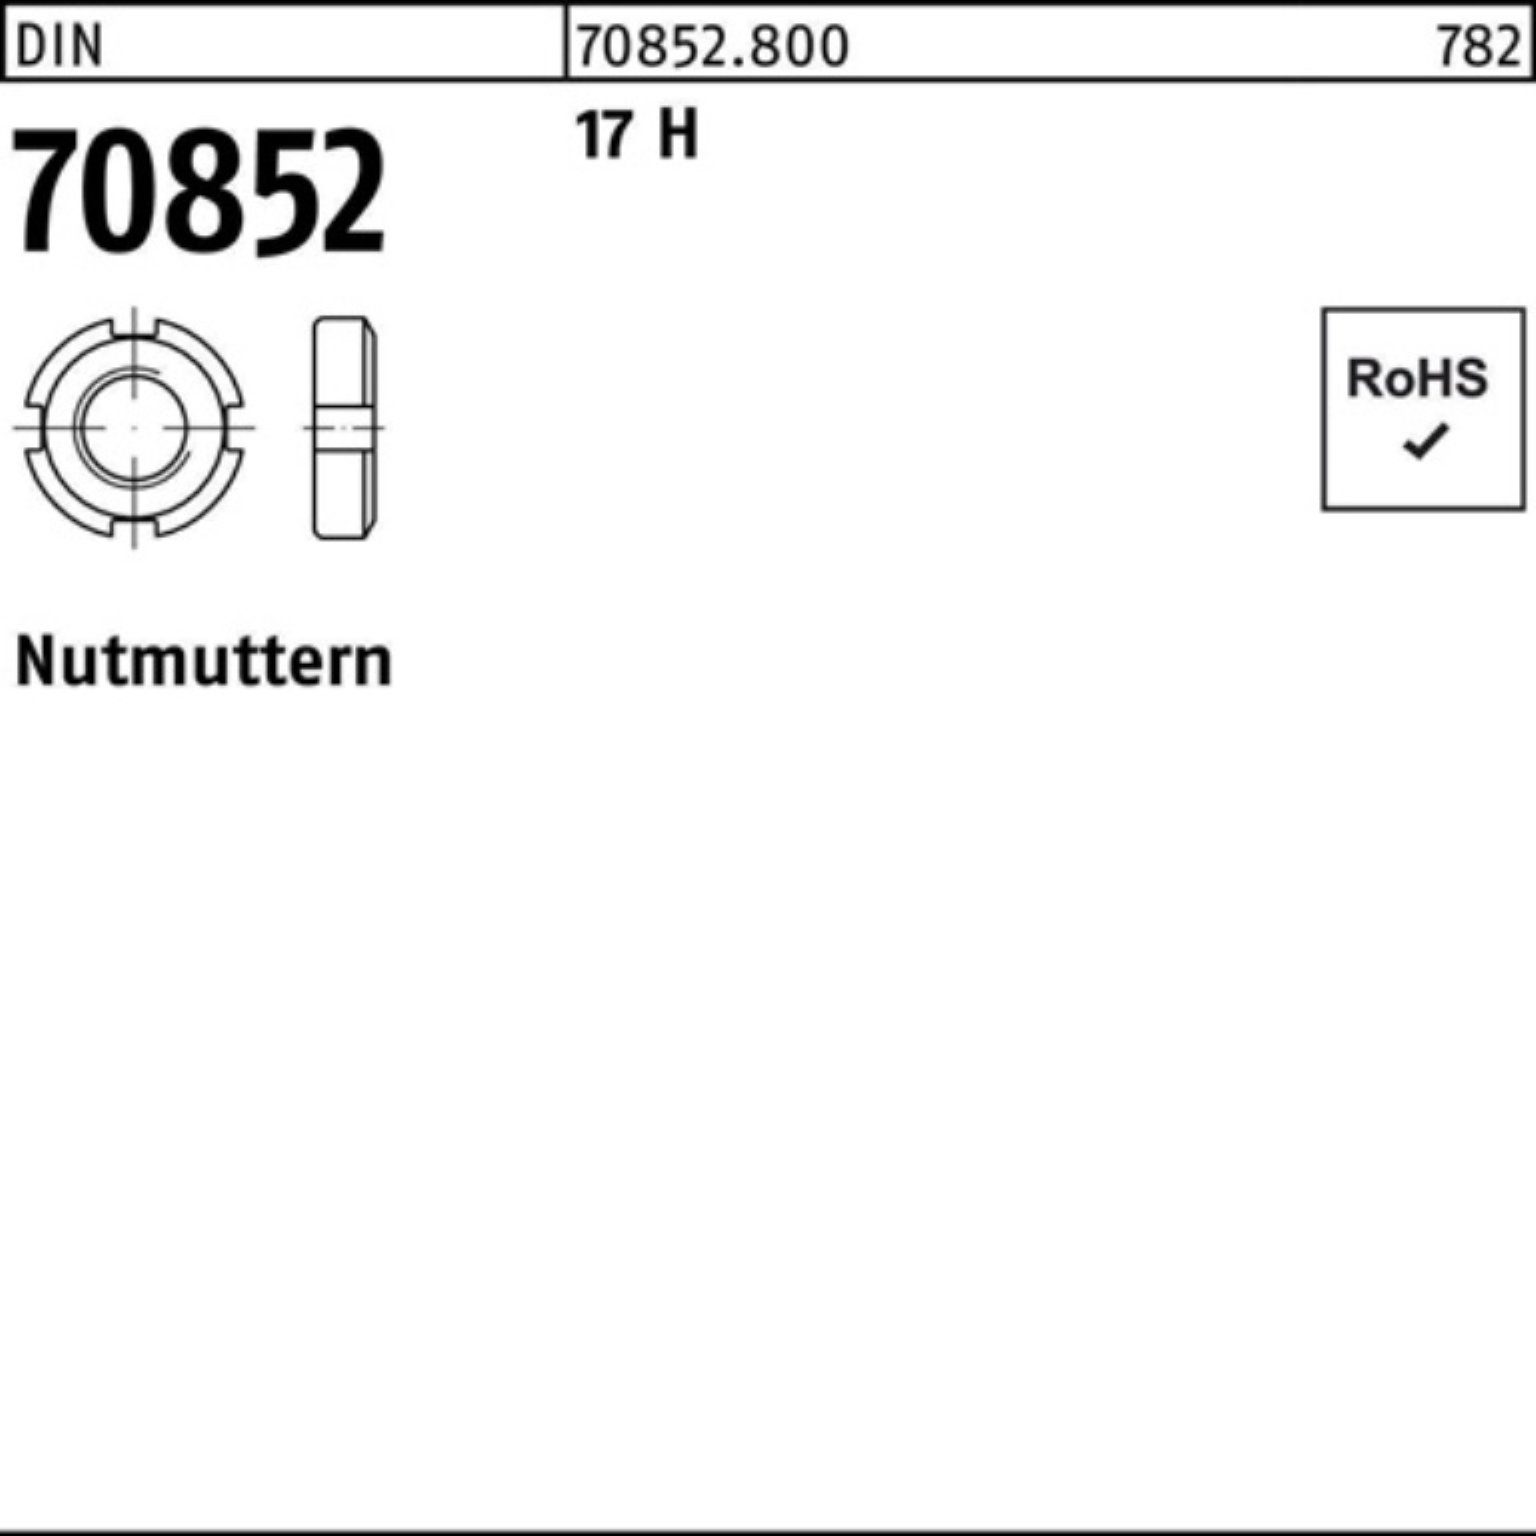 Reyher Nutmutter 100er Pack Nutmutter DIN 70852 M48x 1,5 17 H 1 Stück DIN 70852 17 H N